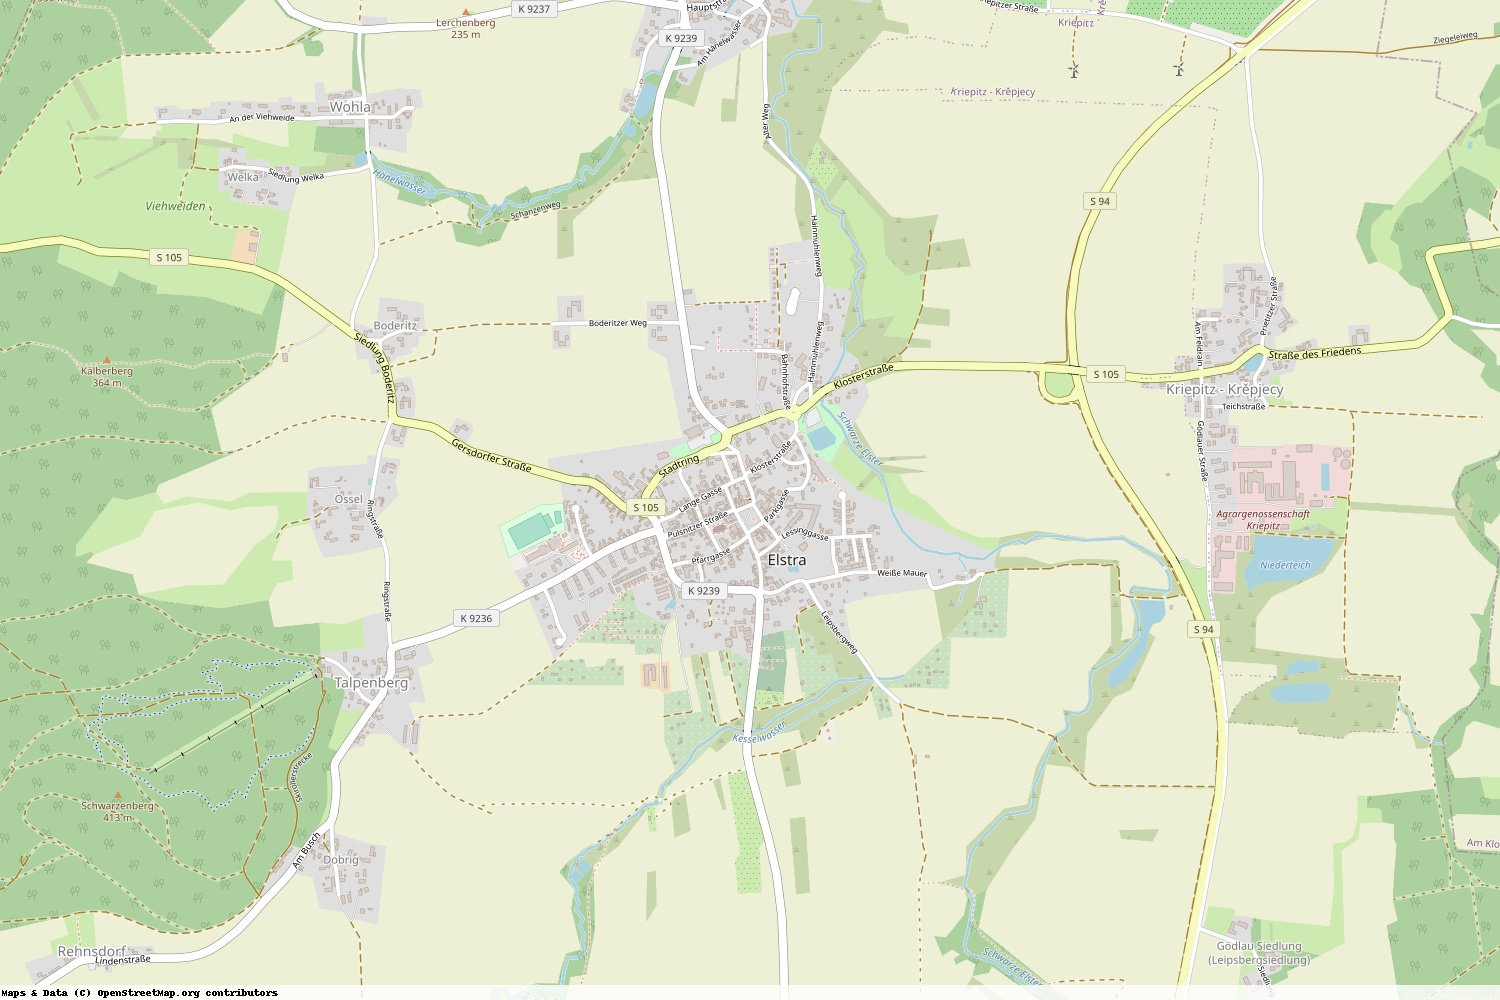 Ist gerade Stromausfall in Sachsen - Bautzen - Elstra?